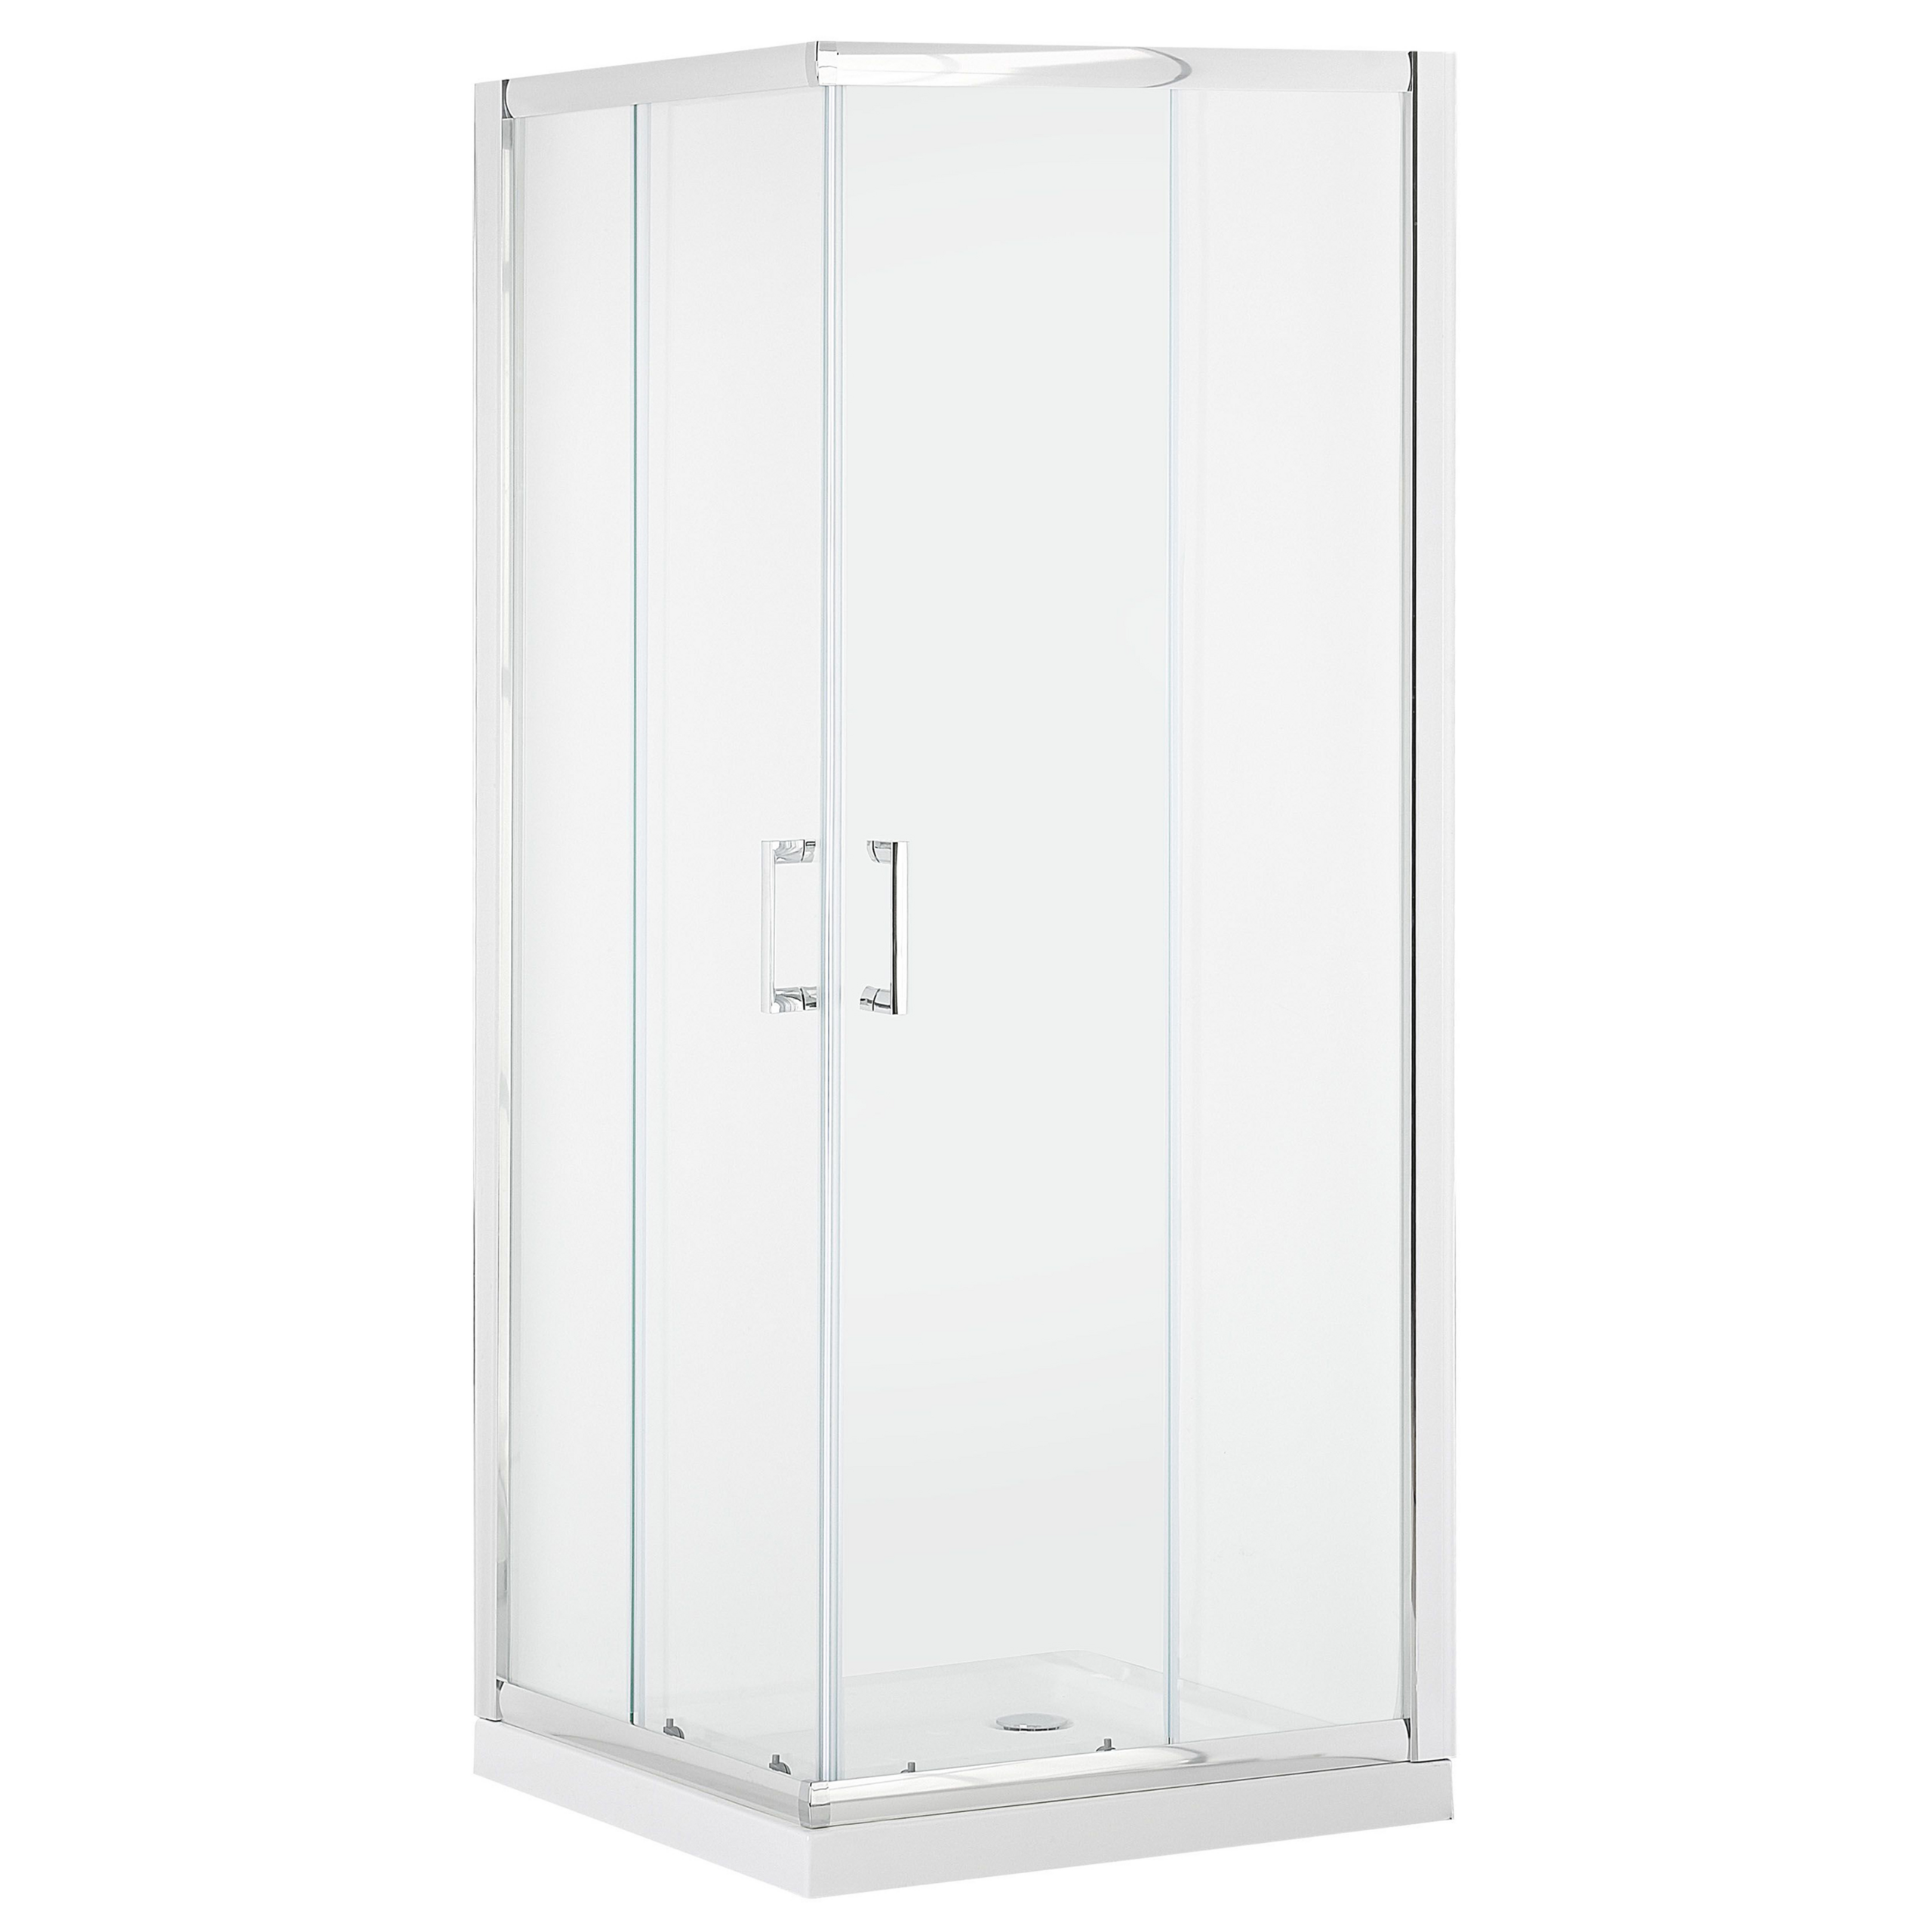 Beliani Cabine de duche prateada com vidro temperado com moldura de alumínio e porta dupla 80 x 80 x 185 cm design moderno